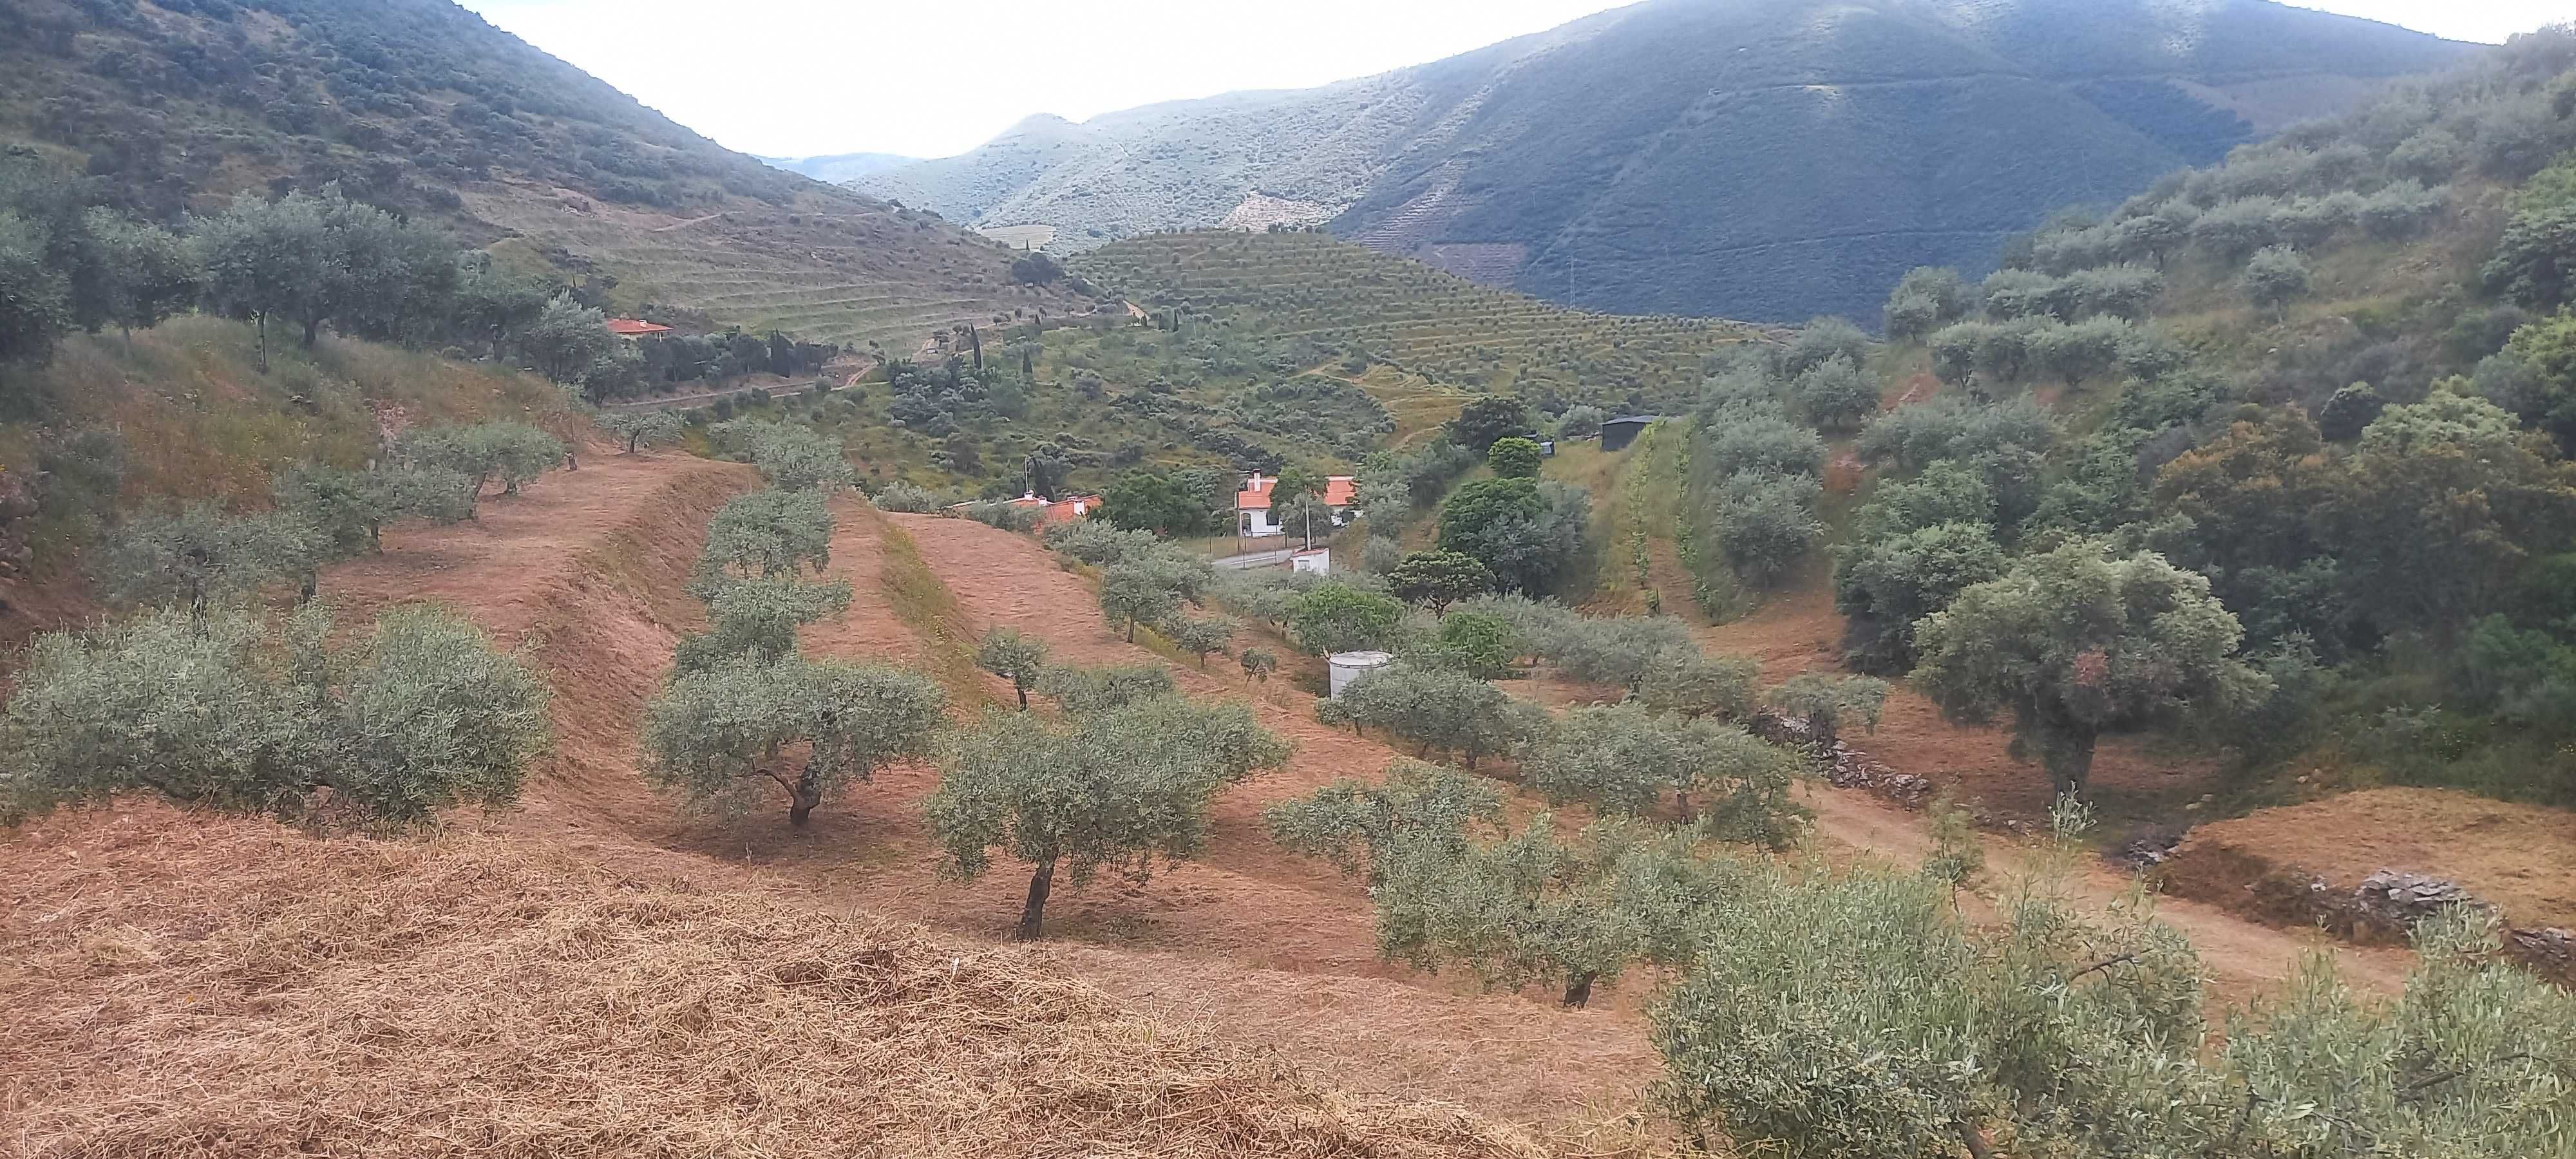 Terreno Rustico com olival em Coleja, Carrazeda de Ansiães